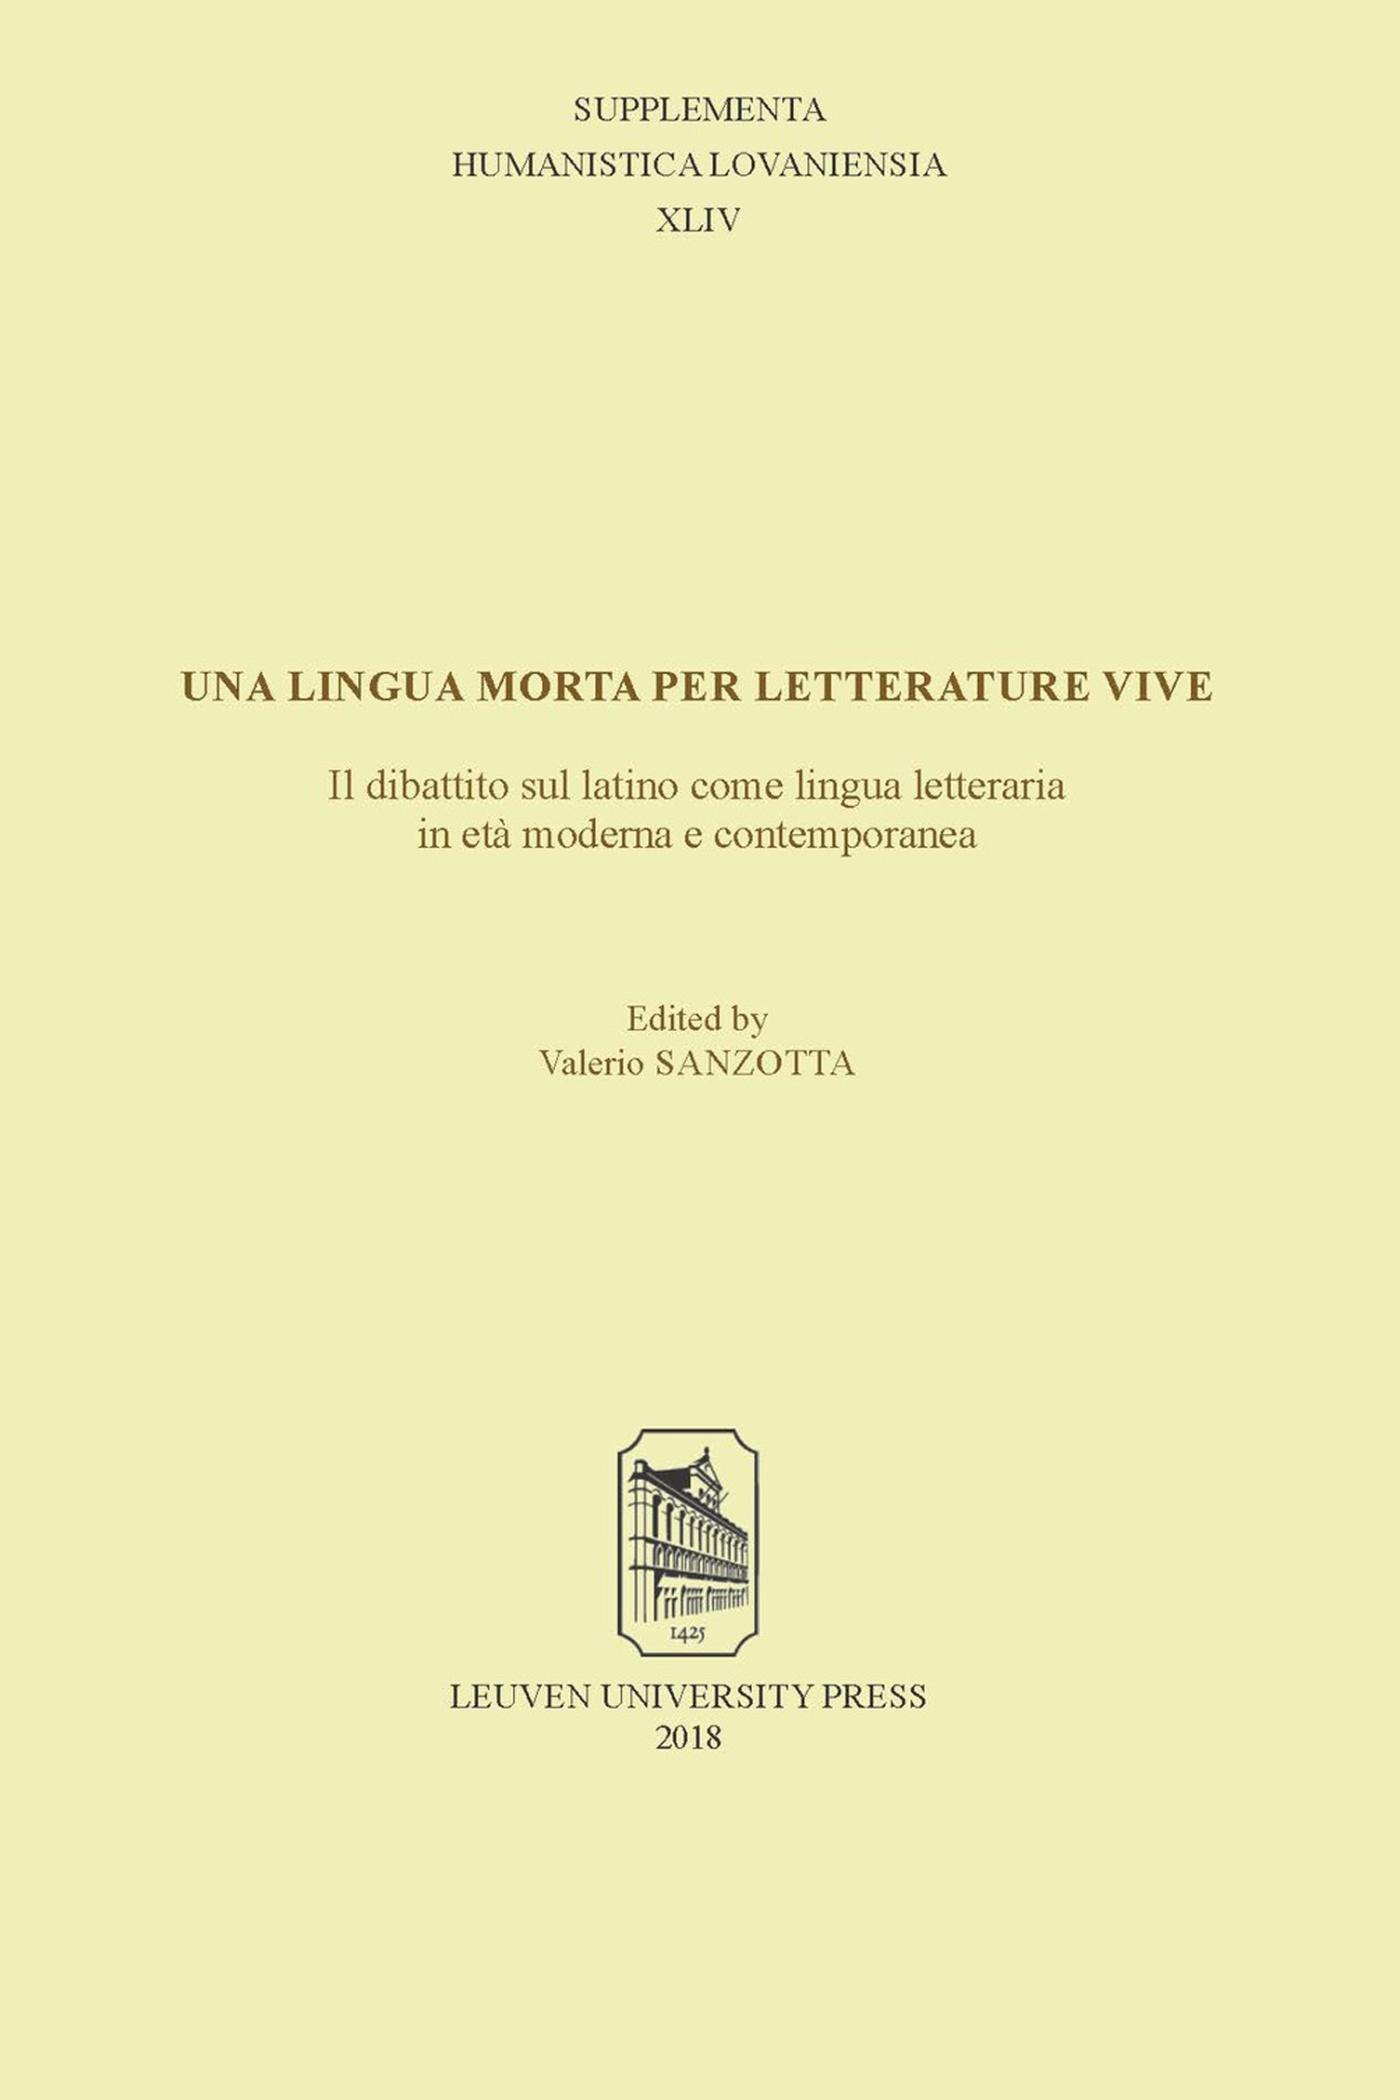 Una lingua morta per letterature vive: il dibattito sul latino come lingua letteraria in et moderna